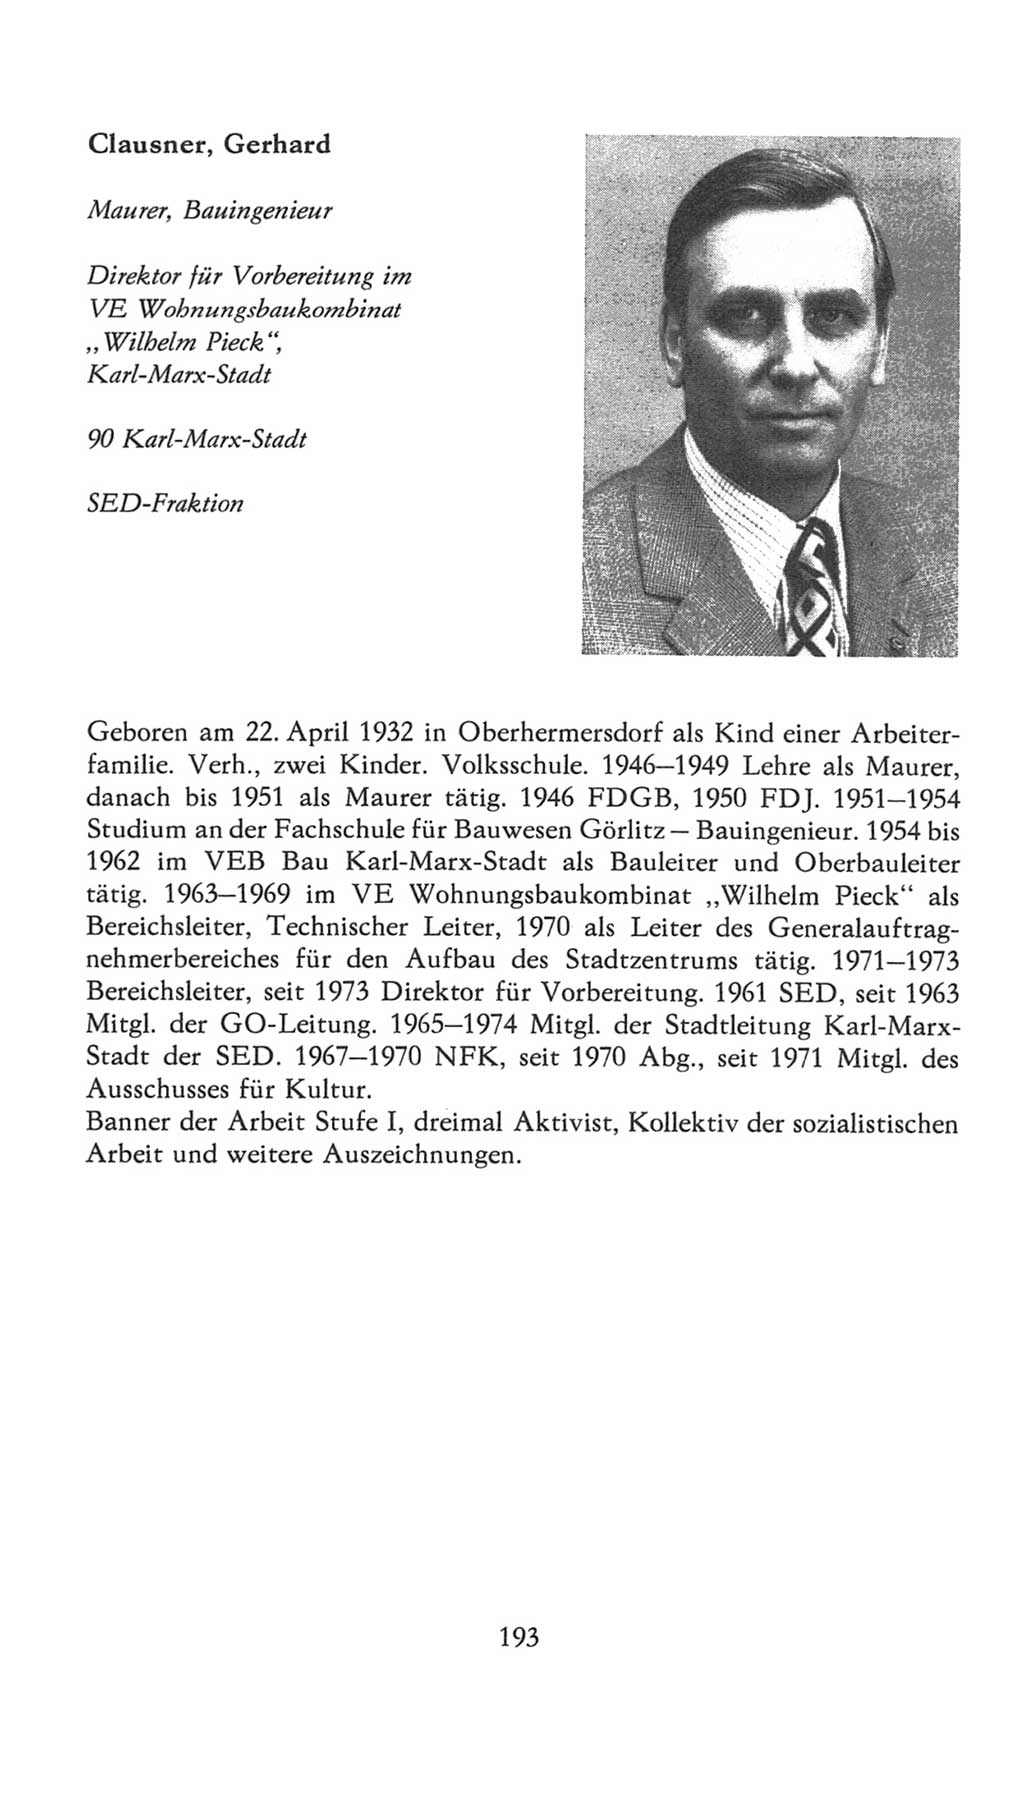 Volkskammer (VK) der Deutschen Demokratischen Republik (DDR), 7. Wahlperiode 1976-1981, Seite 193 (VK. DDR 7. WP. 1976-1981, S. 193)